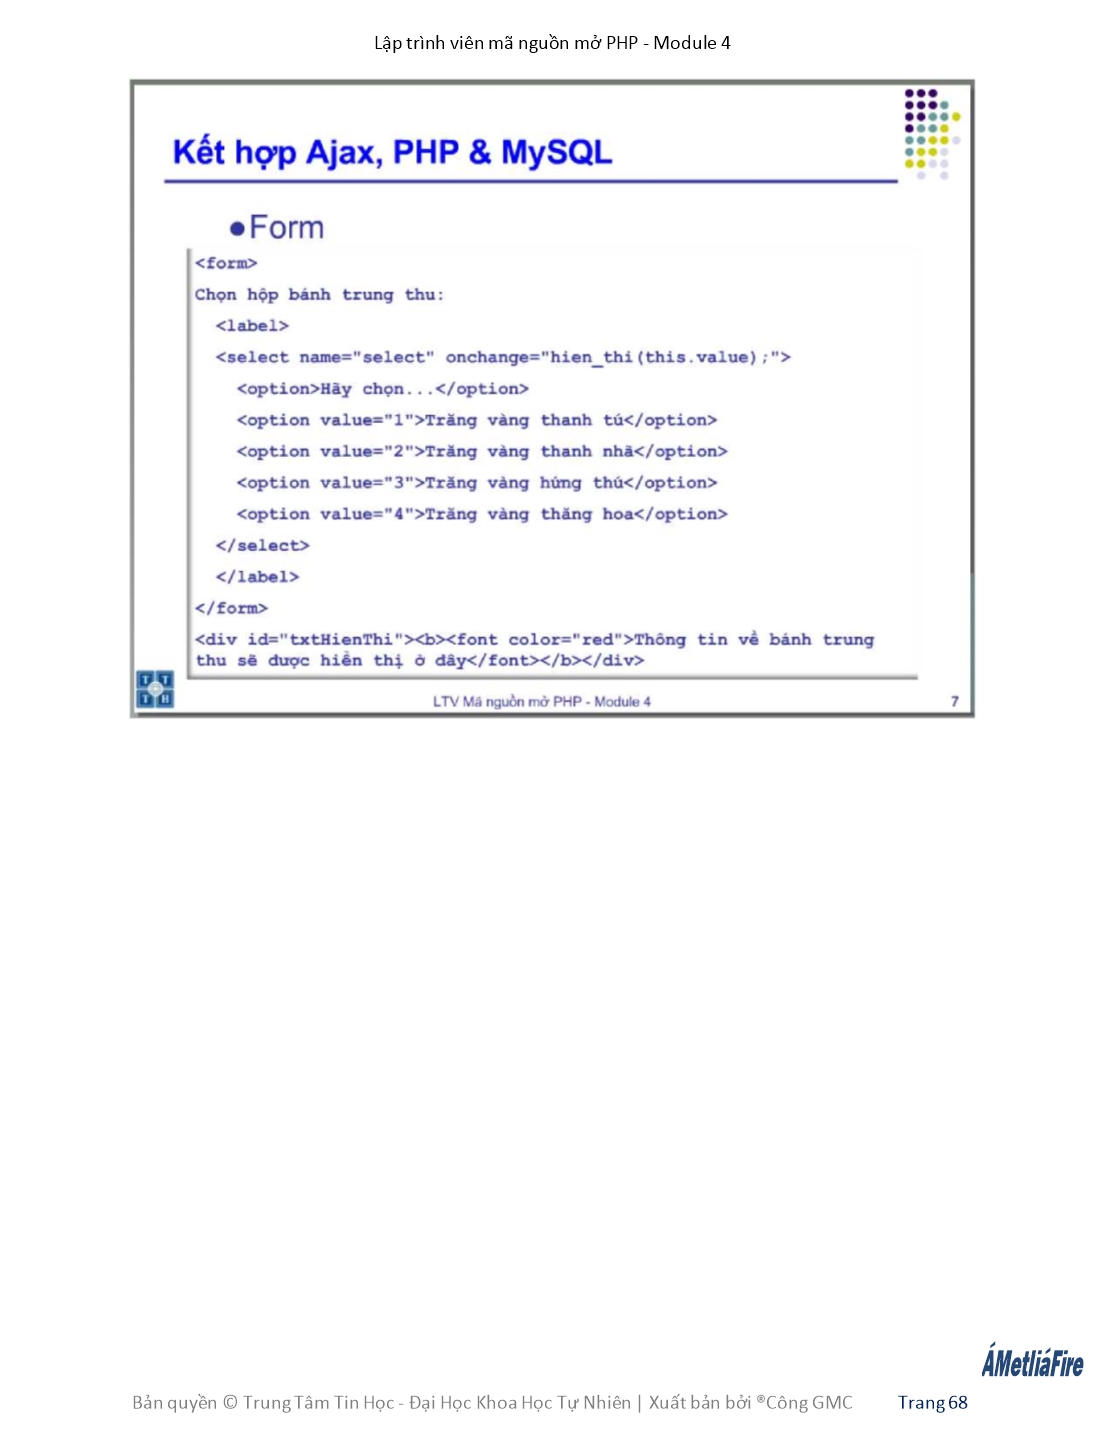 Giáo trình Module 4: Lập trình viên mã nguồn mở PHP - Bài 6: Ajax 2 trang 5